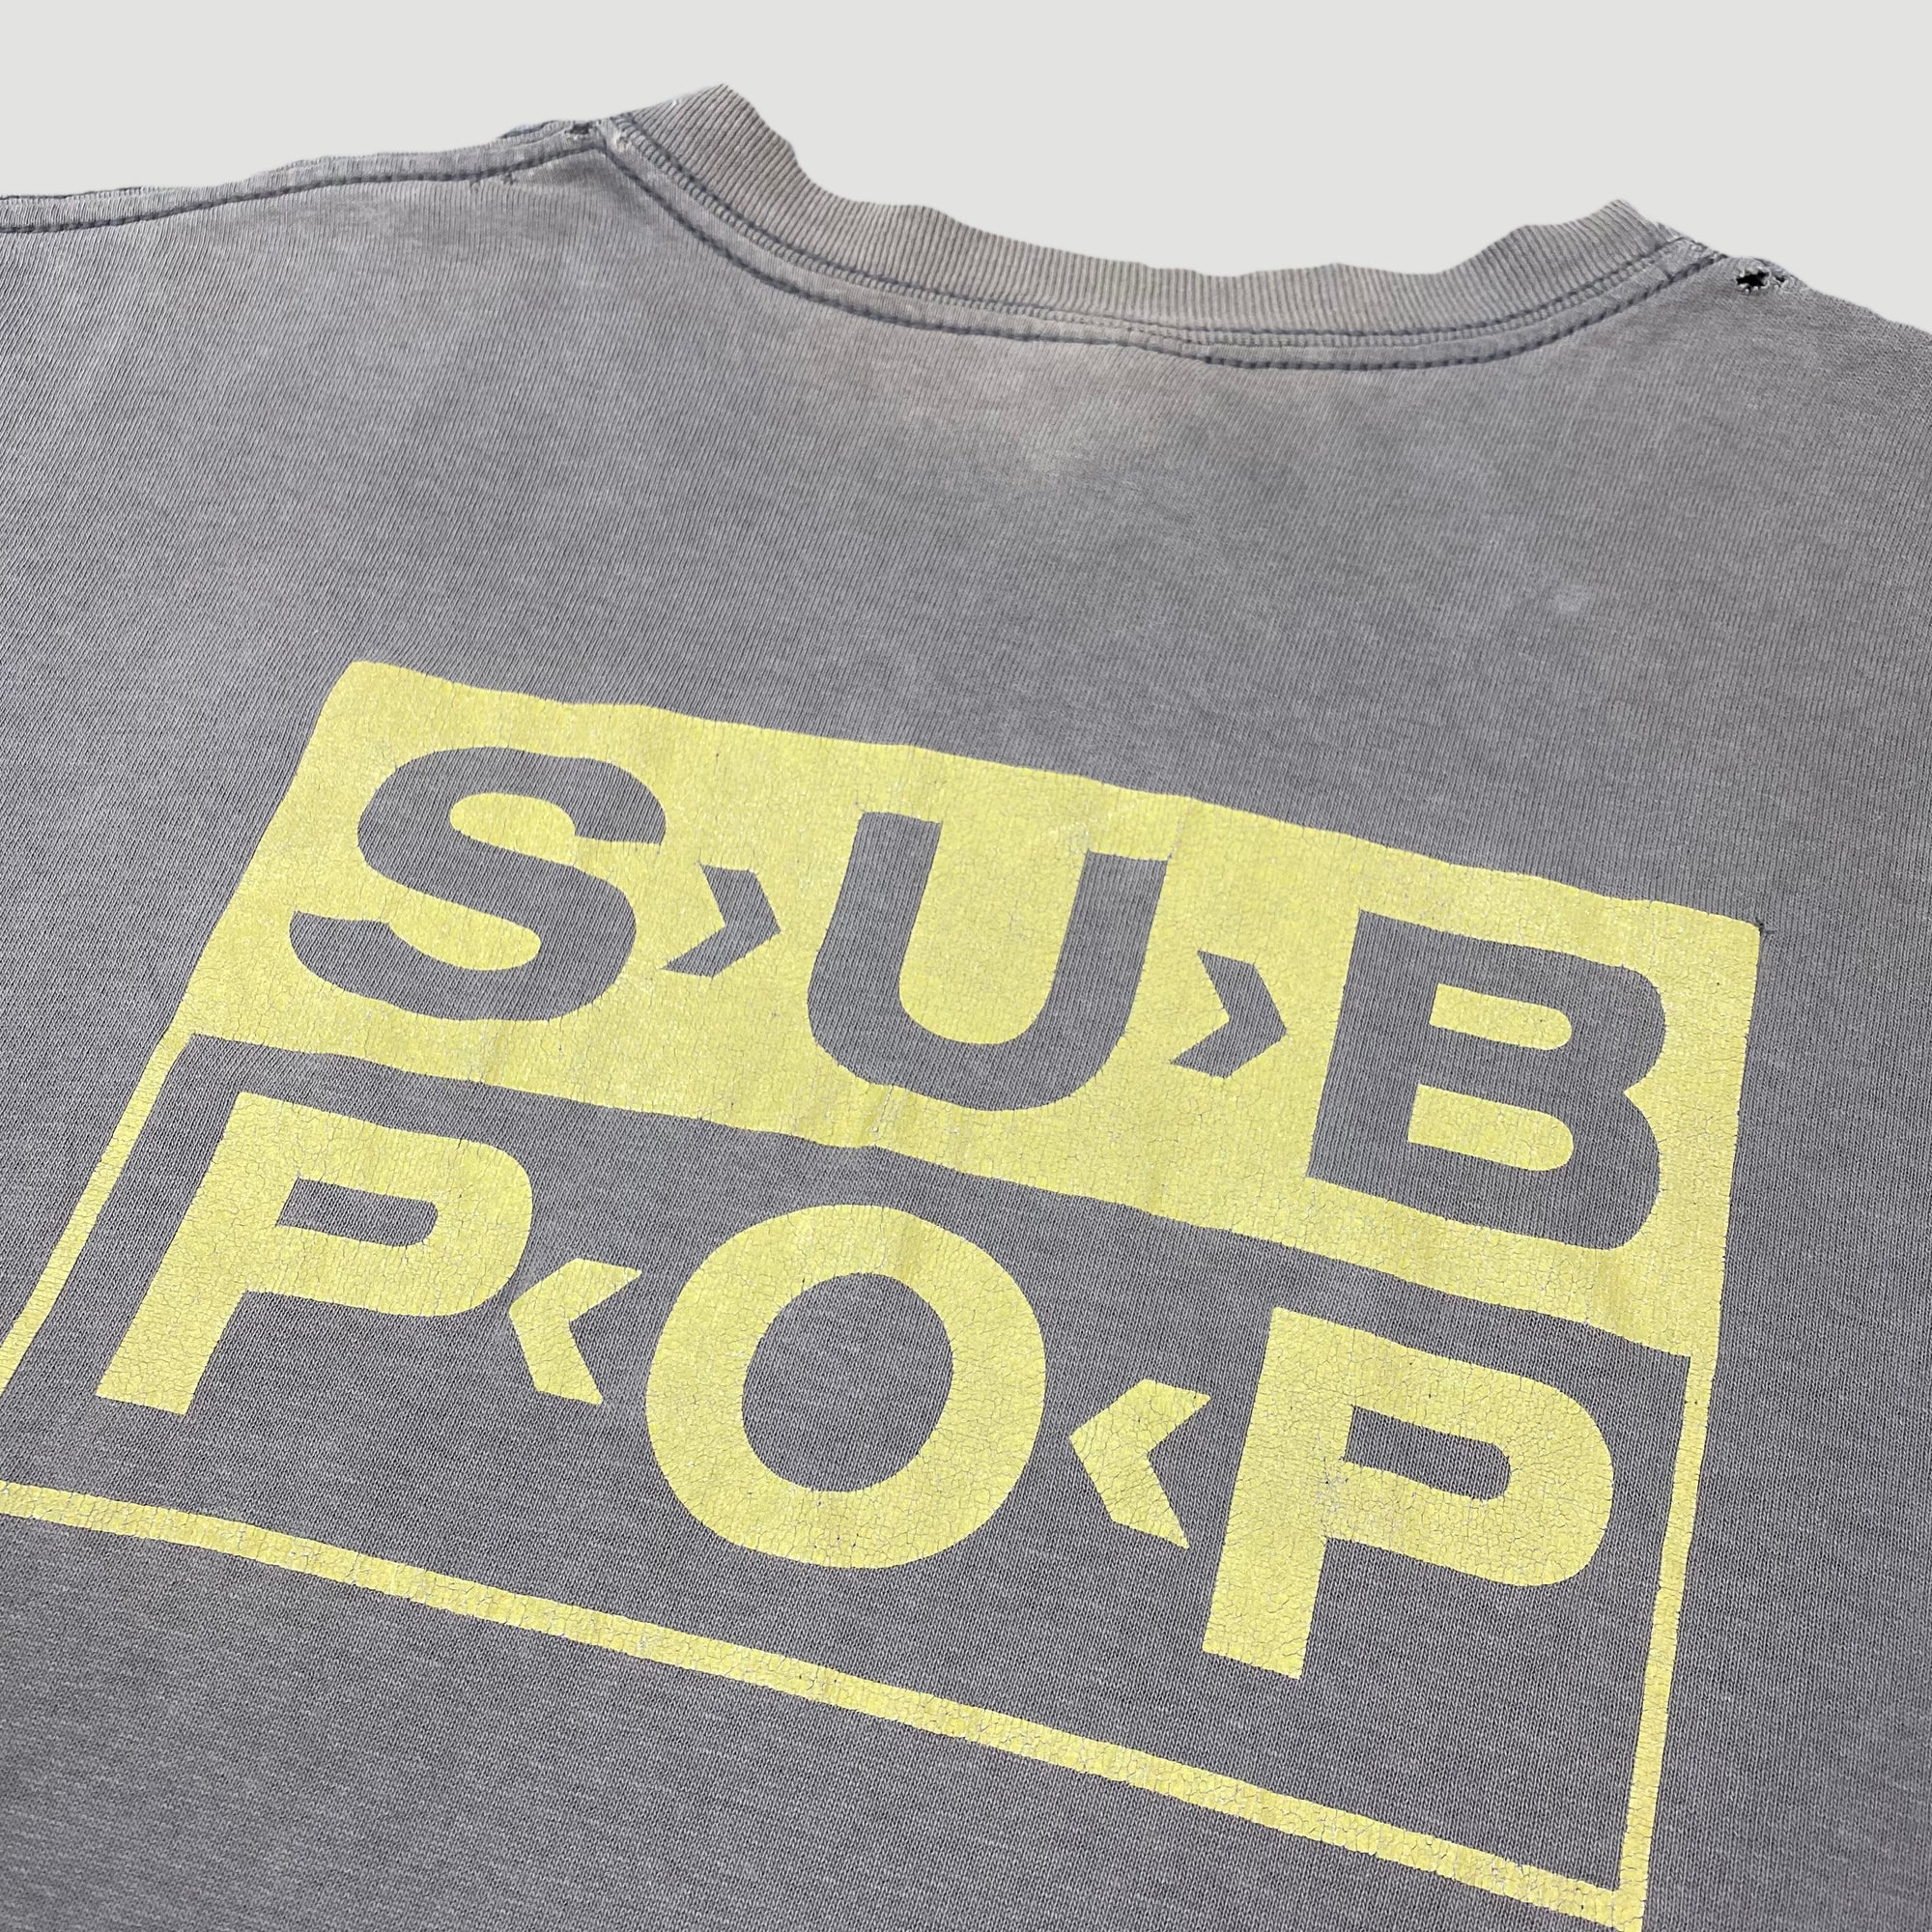 Mid 90's Sub Pop 'No Comment' T-Shirt